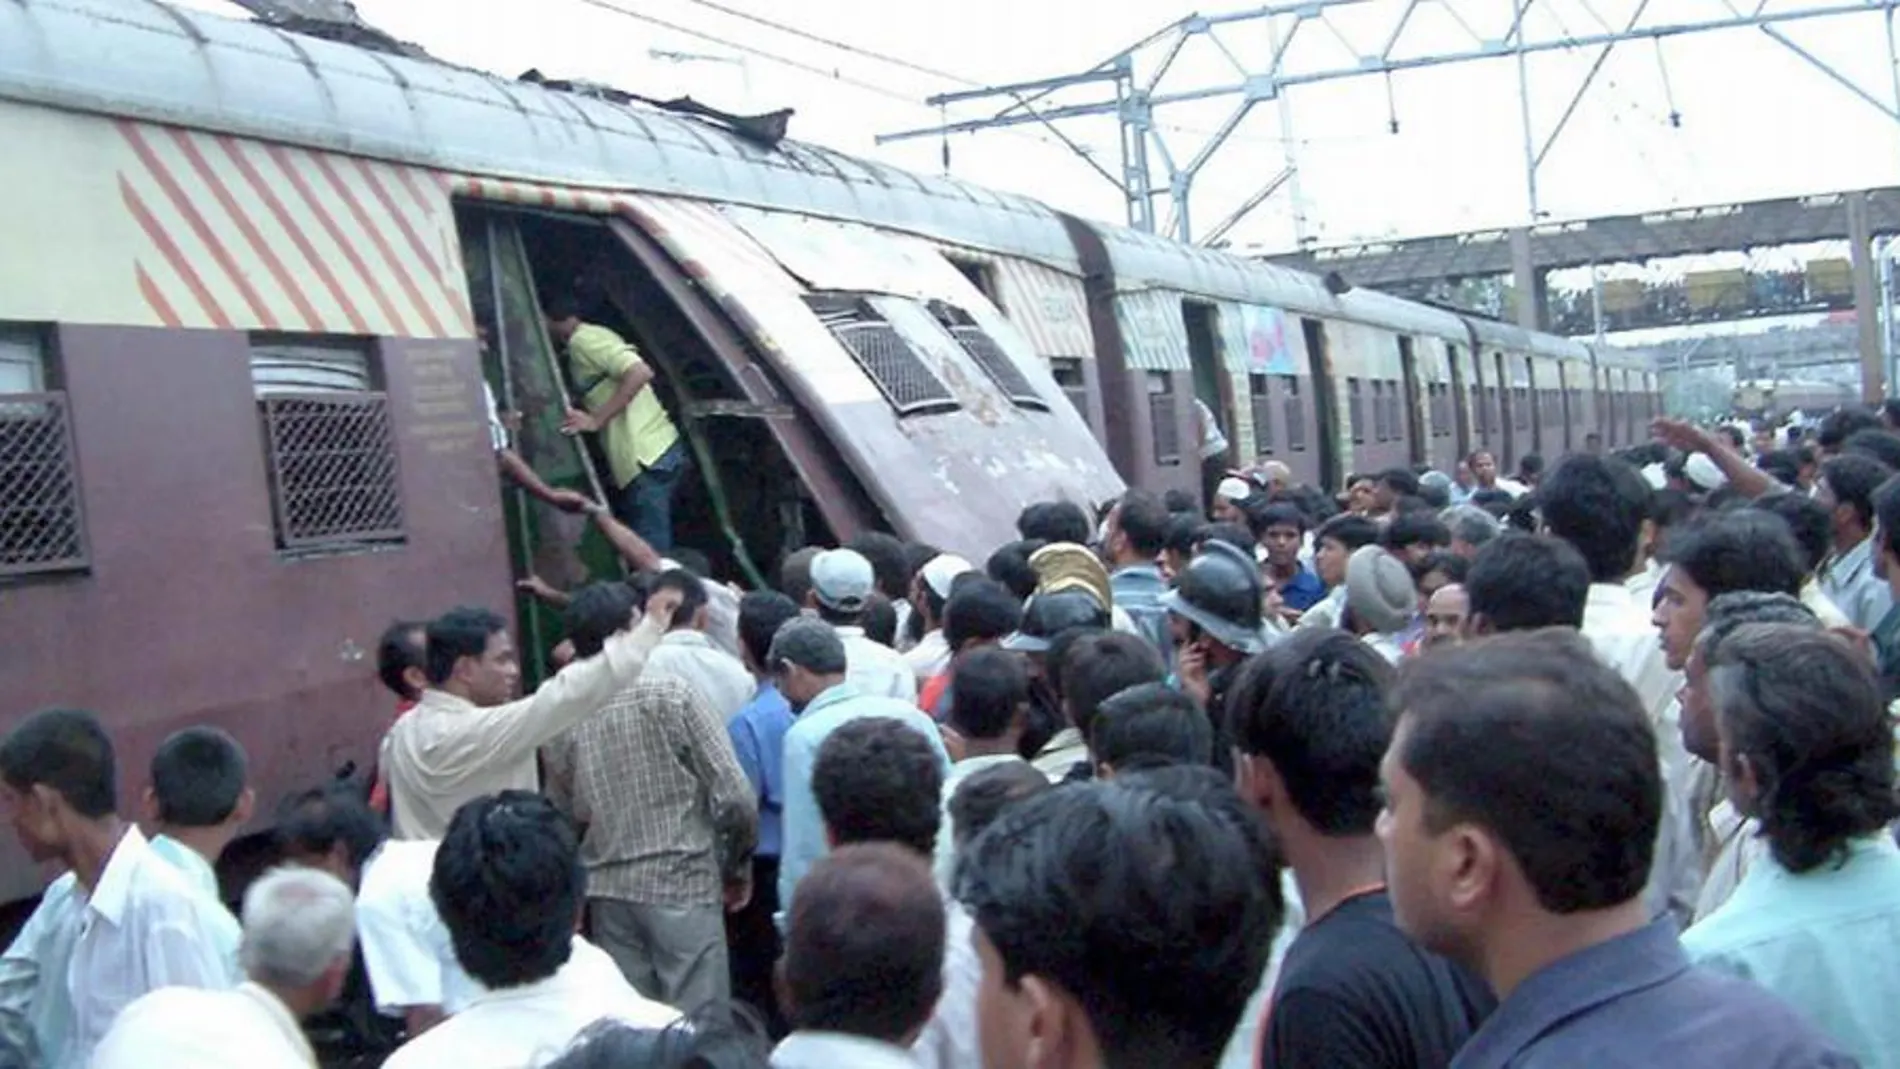 Al menos quince personas han muerto y otras 30 han resultado heridas como consecuencia de una estampida en una estación de tren en Bombay